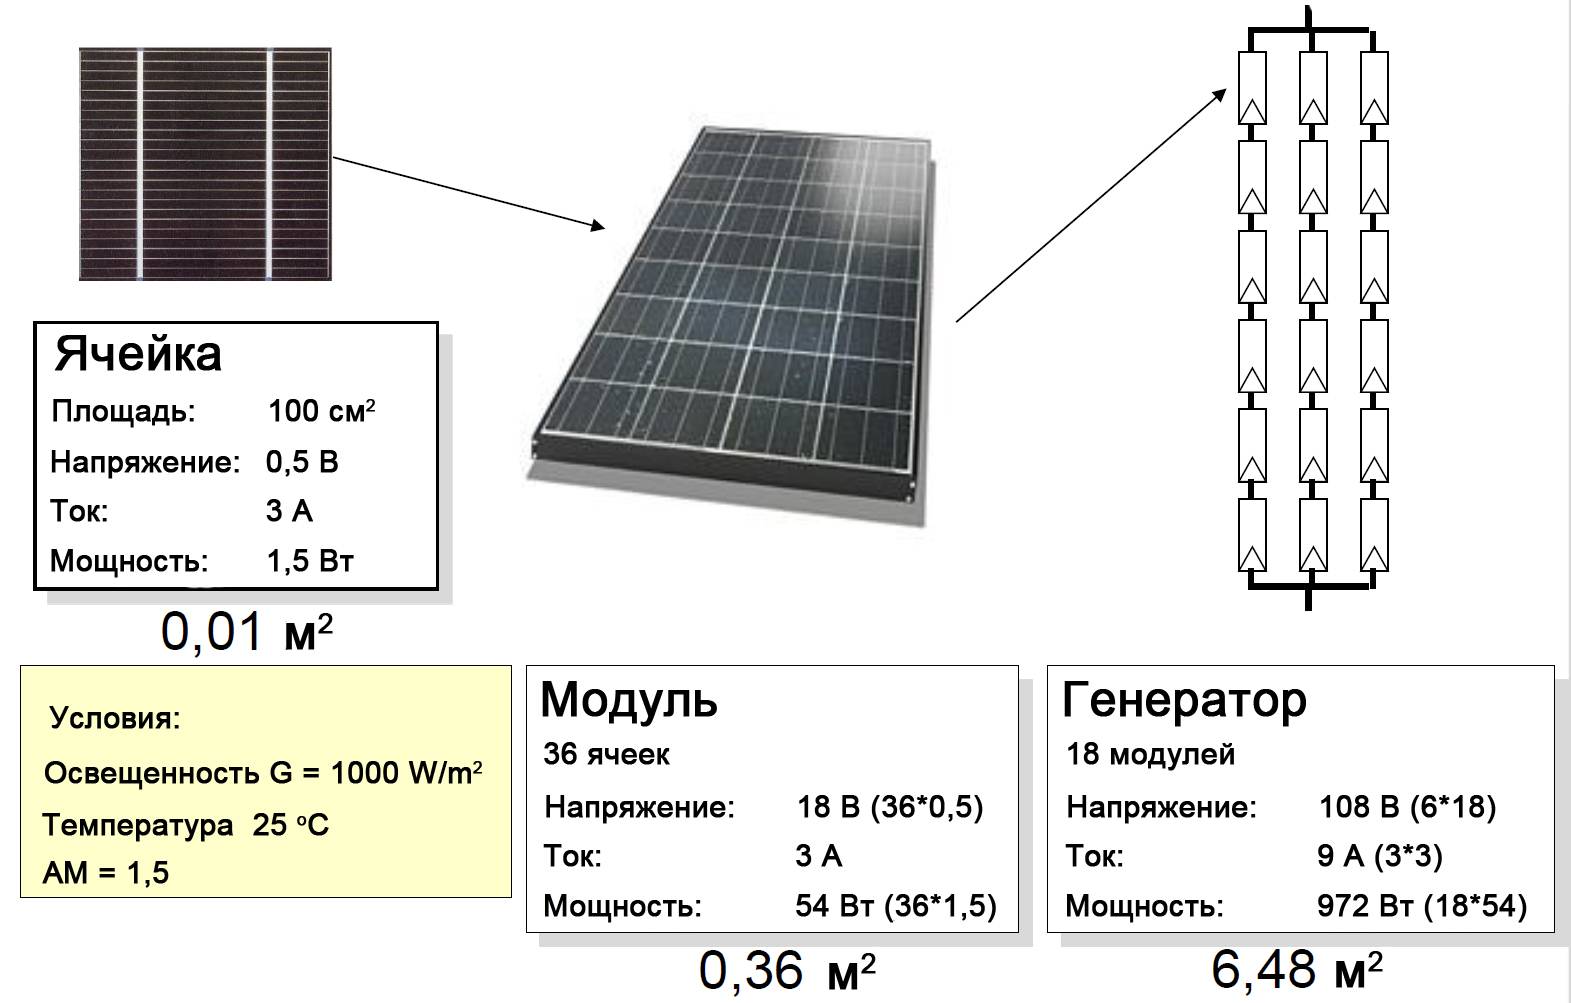 Какие характеристики солнечных батарей наиболее важные?